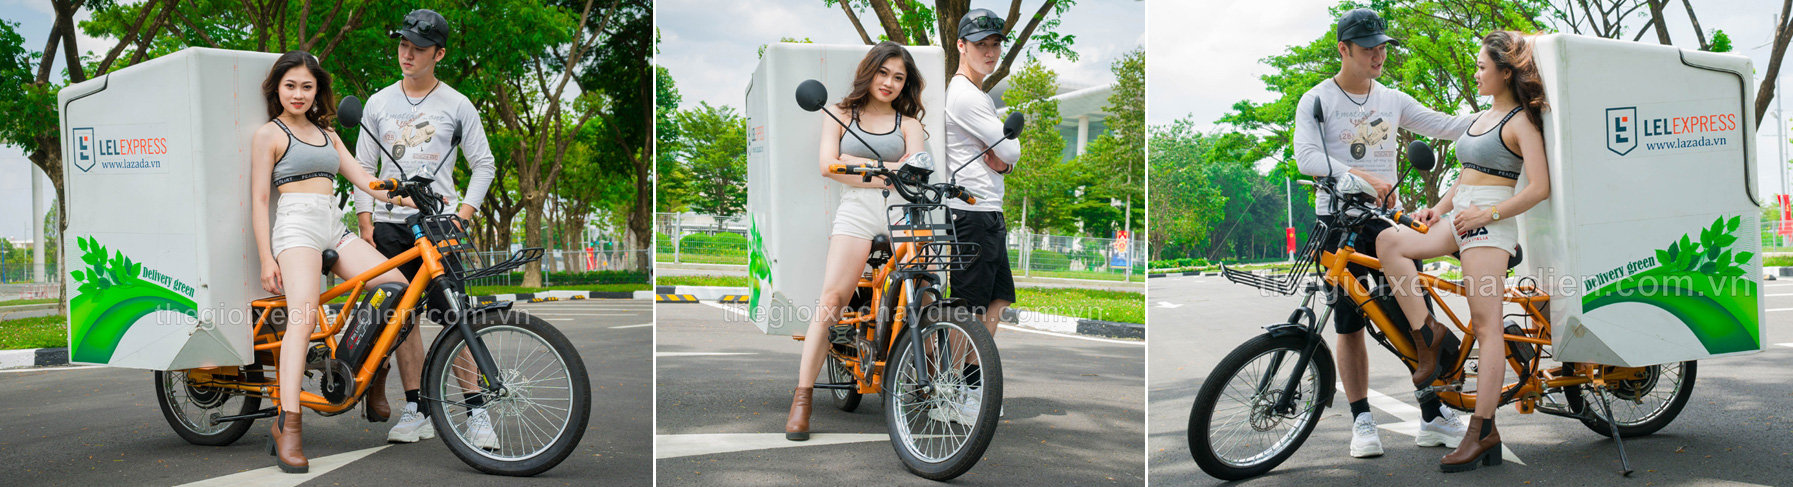 Xe đạp điện chở hàng 